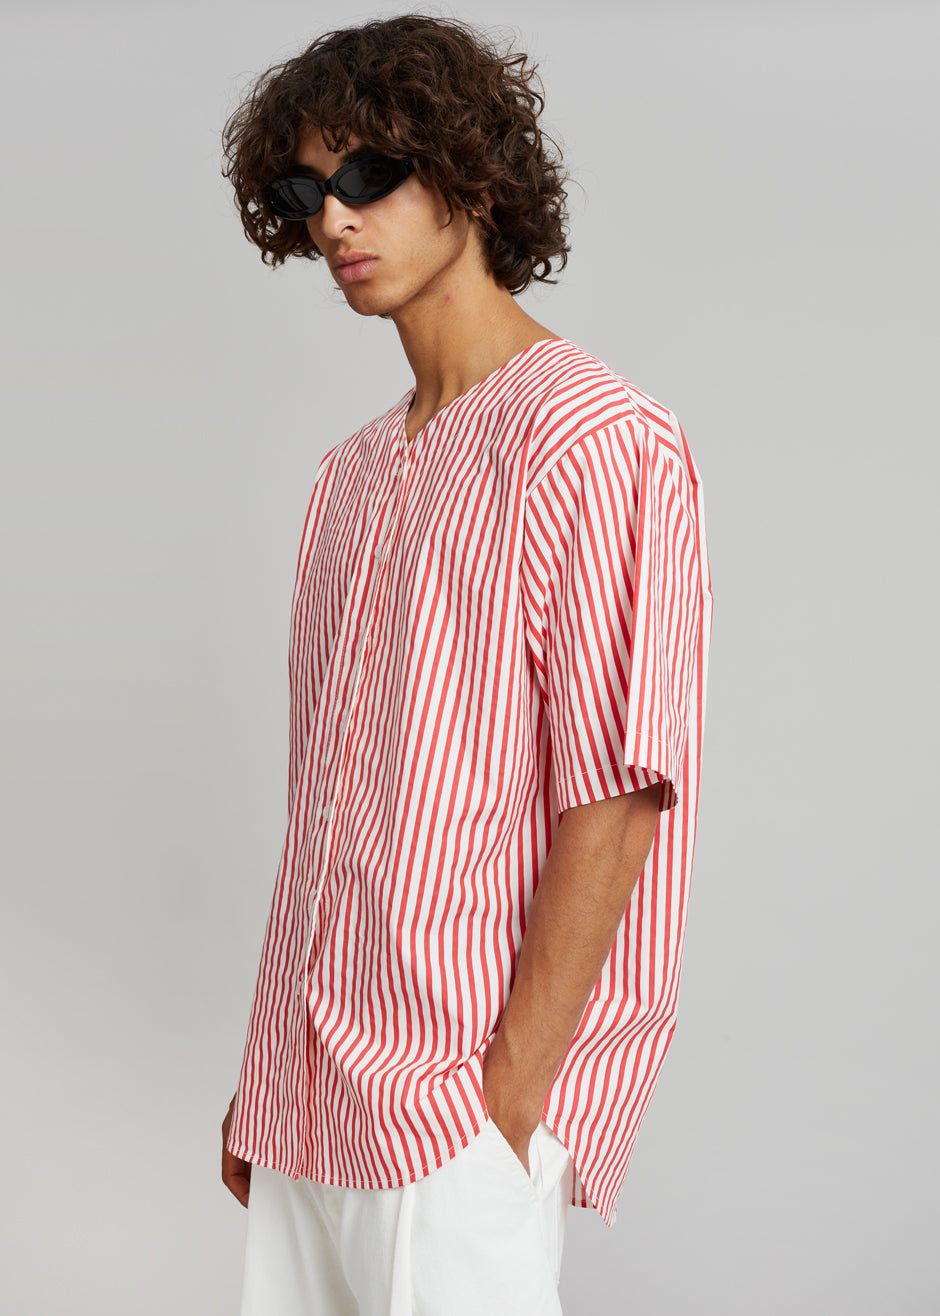 Tom Baseball Shirt - Red Stripe - 6